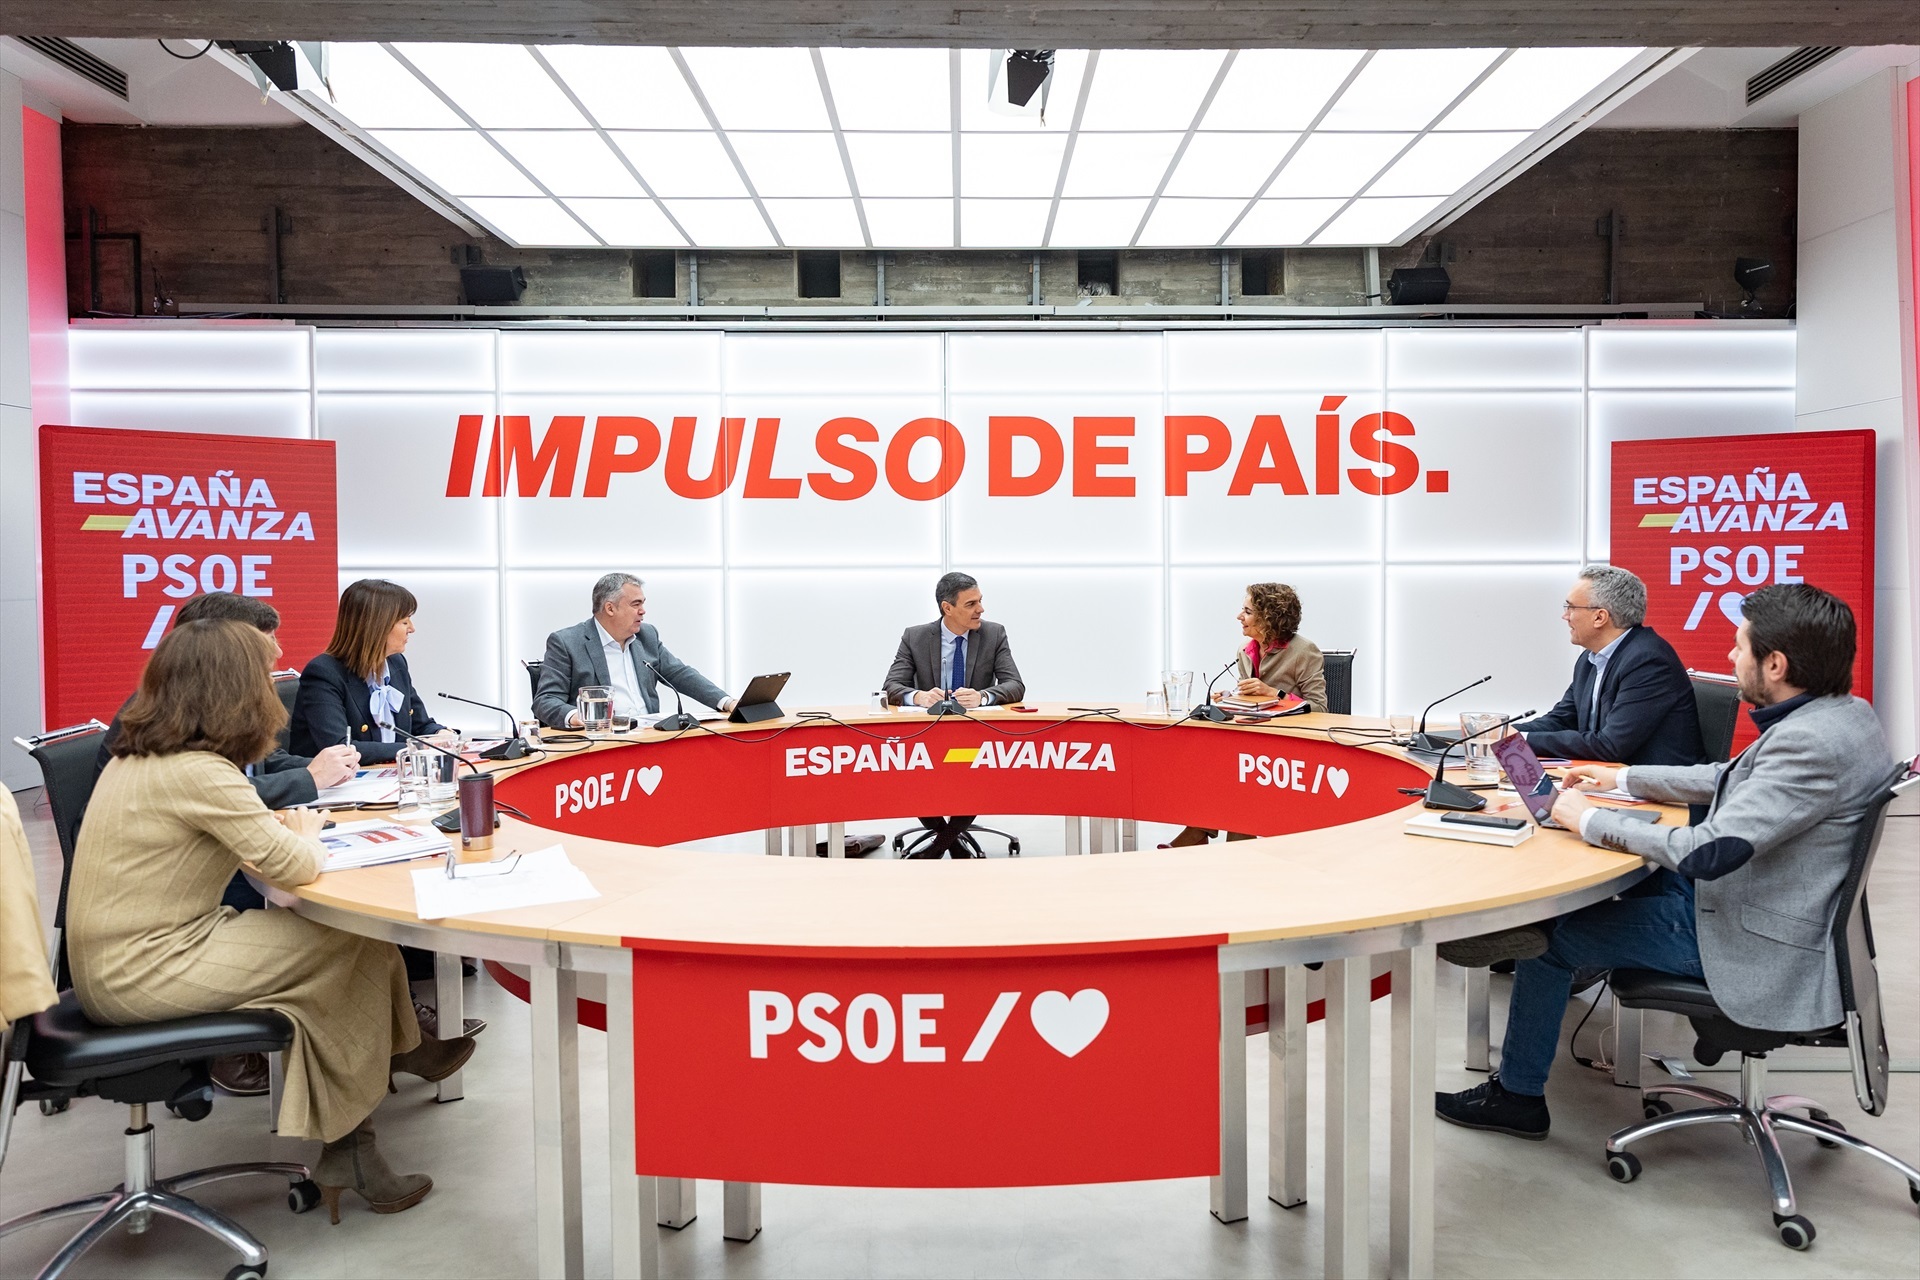 El PSOE defenderá la amnistía en la convención política como una ley constitucional y necesaria